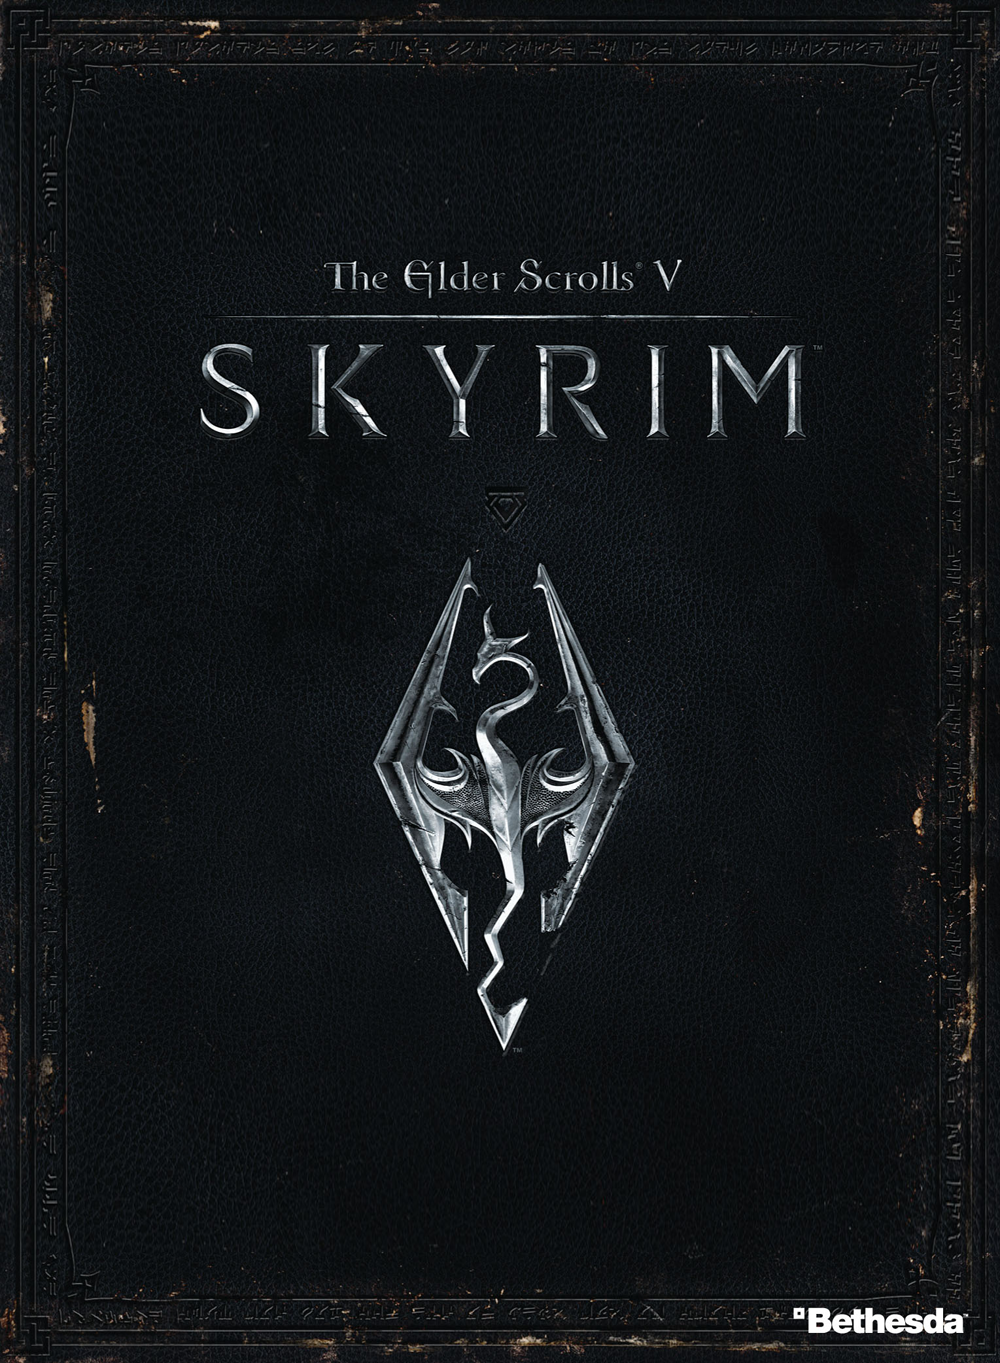 Voir Film The Elder Scrolls V : Skyrim (2011)  - Jeu vidéo streaming VF gratuit complet